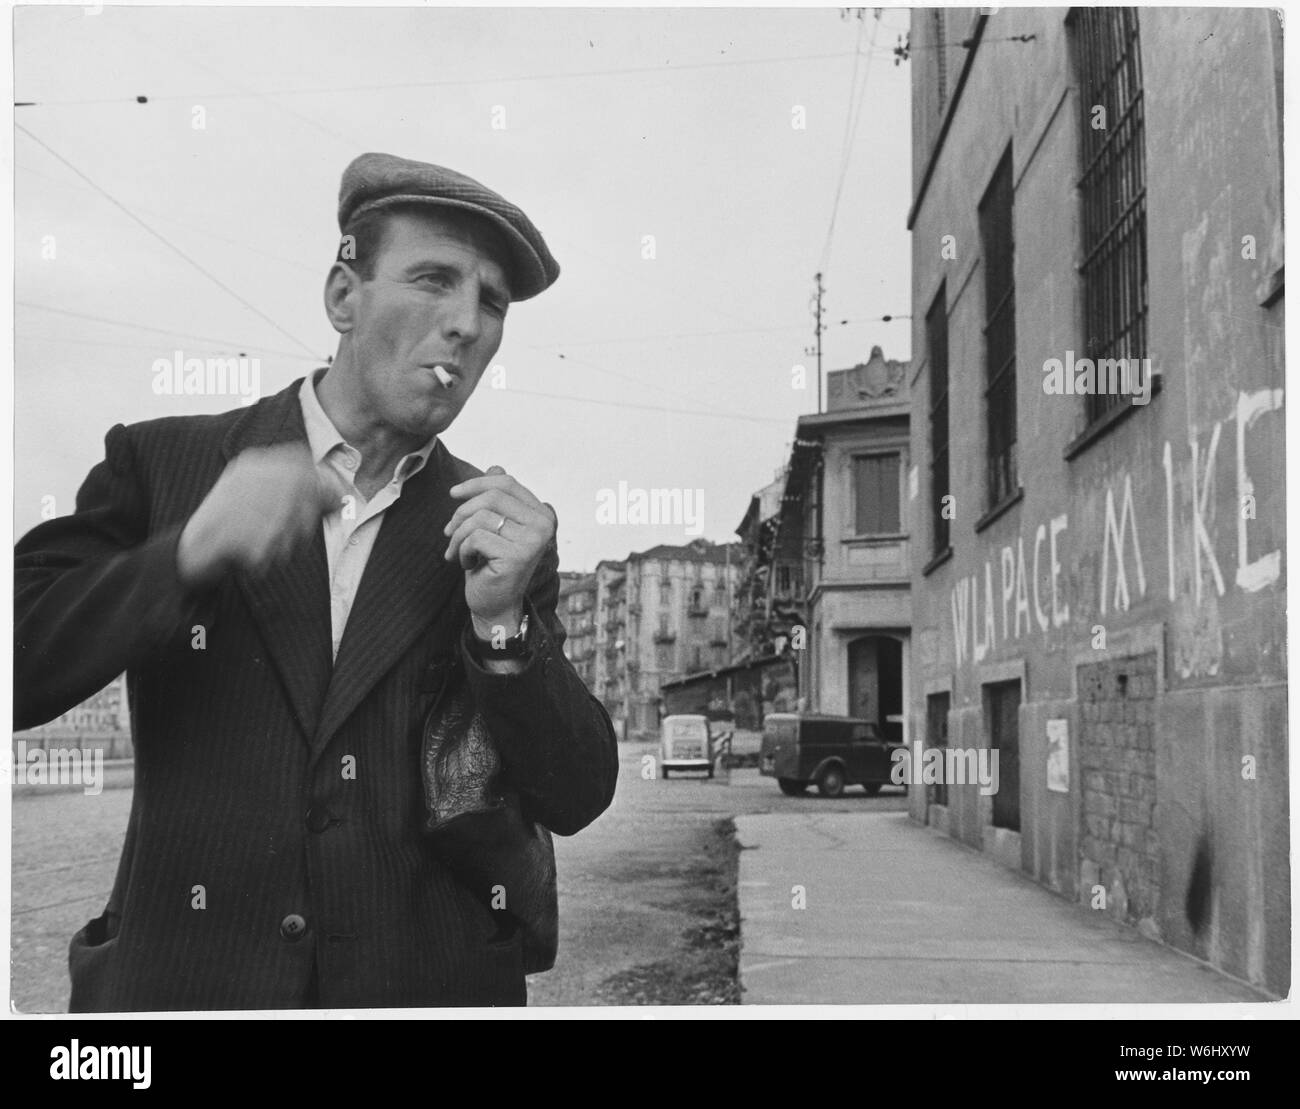 L'Italie. [Un homme de fumer une cigarette. Sur le mur l'inscription lit jusqu'à la paix, vers le bas avec Ike (Eisenhower)]. Banque D'Images